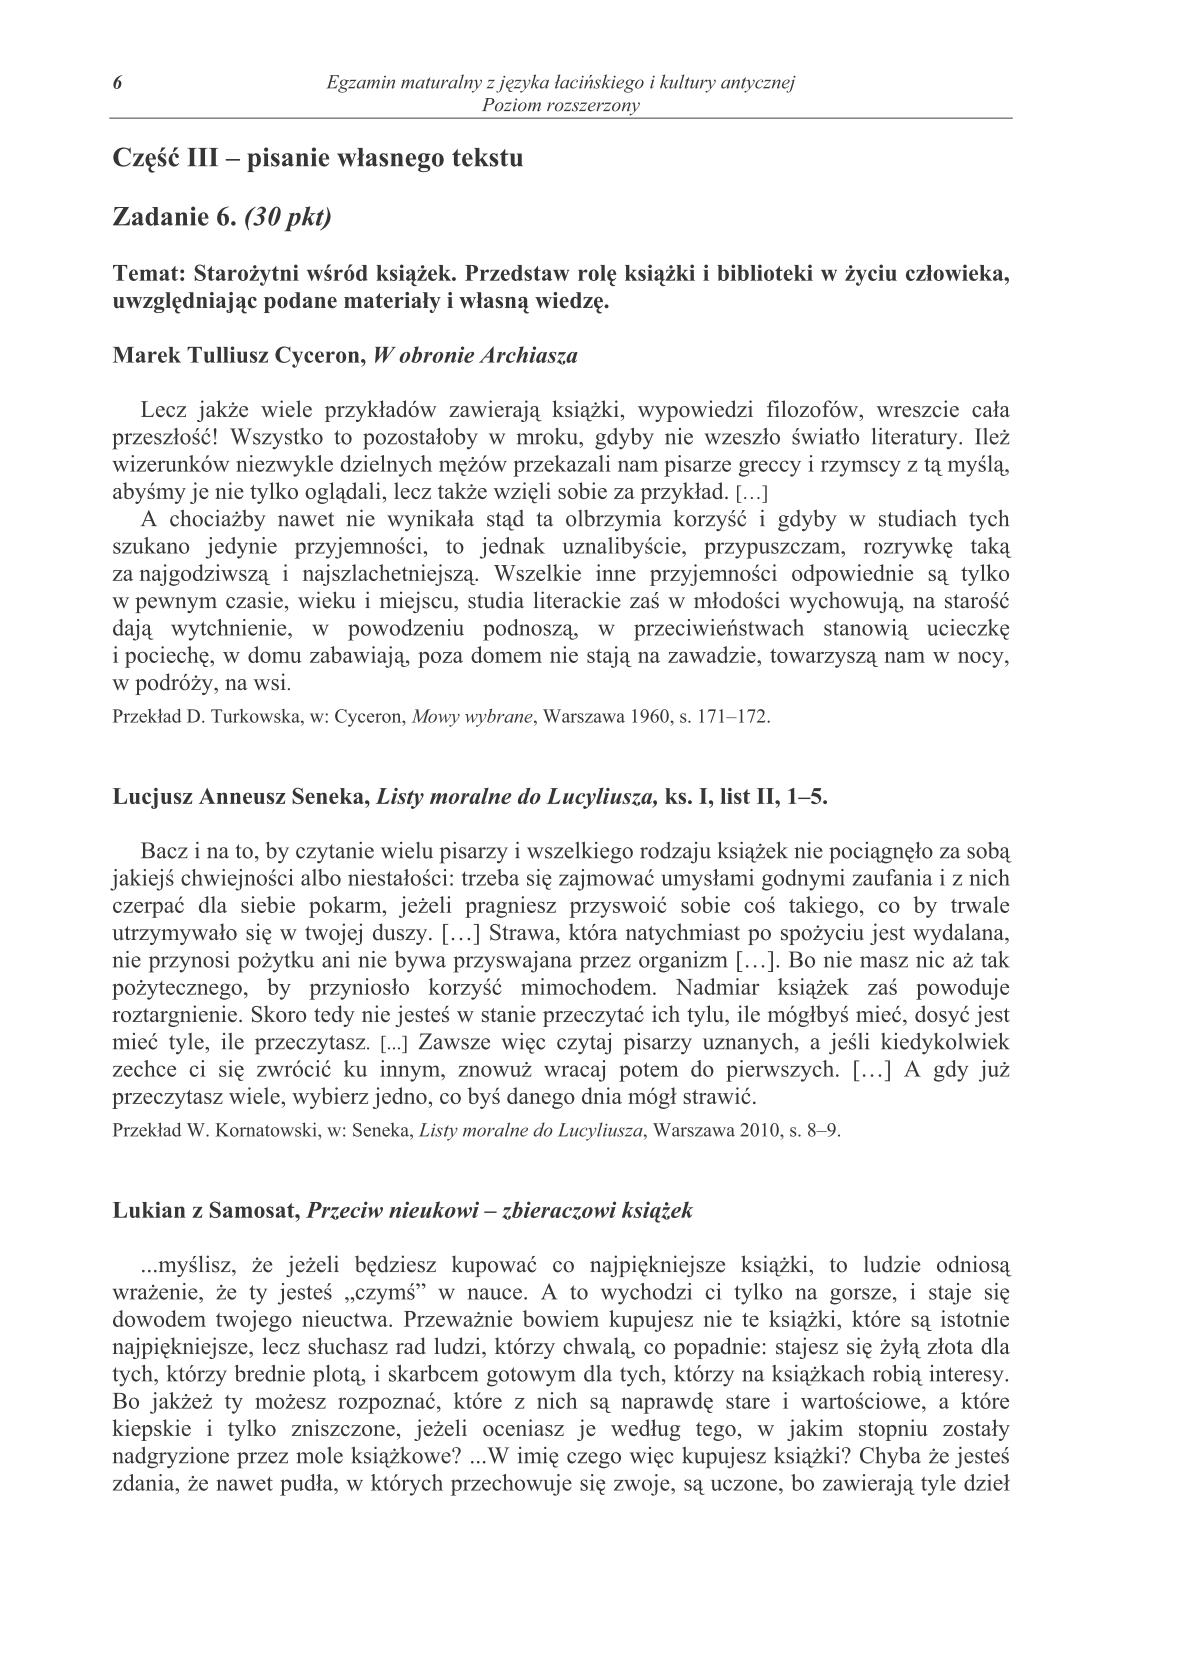 pytania-jezyk-lacinski-i-kultura-antyczna-poziom-rozszerzony-matura-2014-str.6